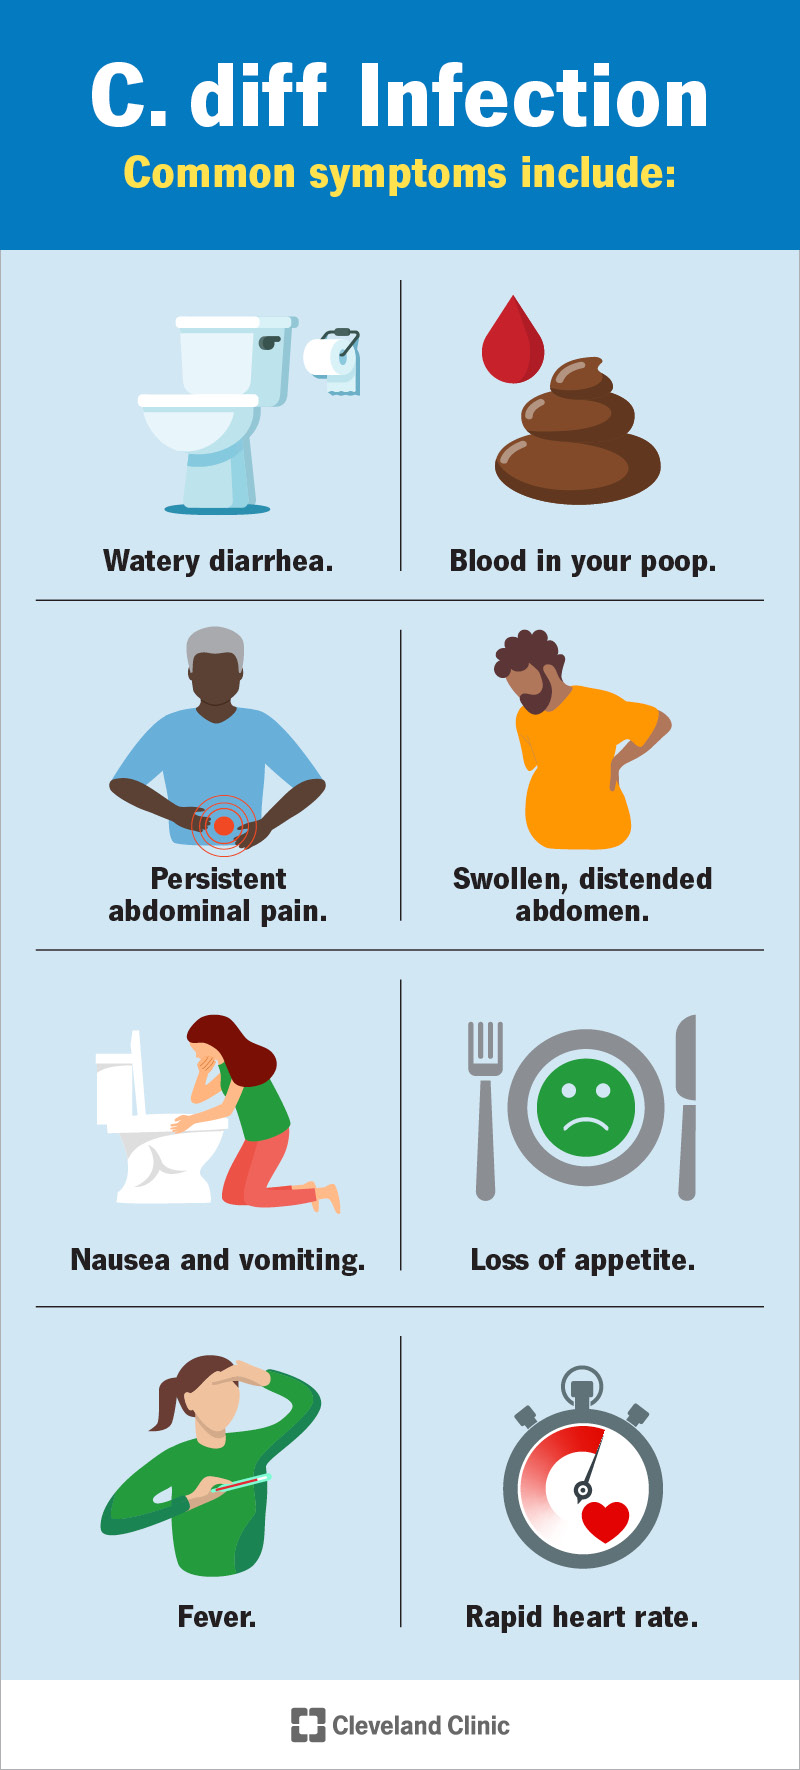 L'infezione da C. diff provoca diarrea acquosa, talvolta con sangue.